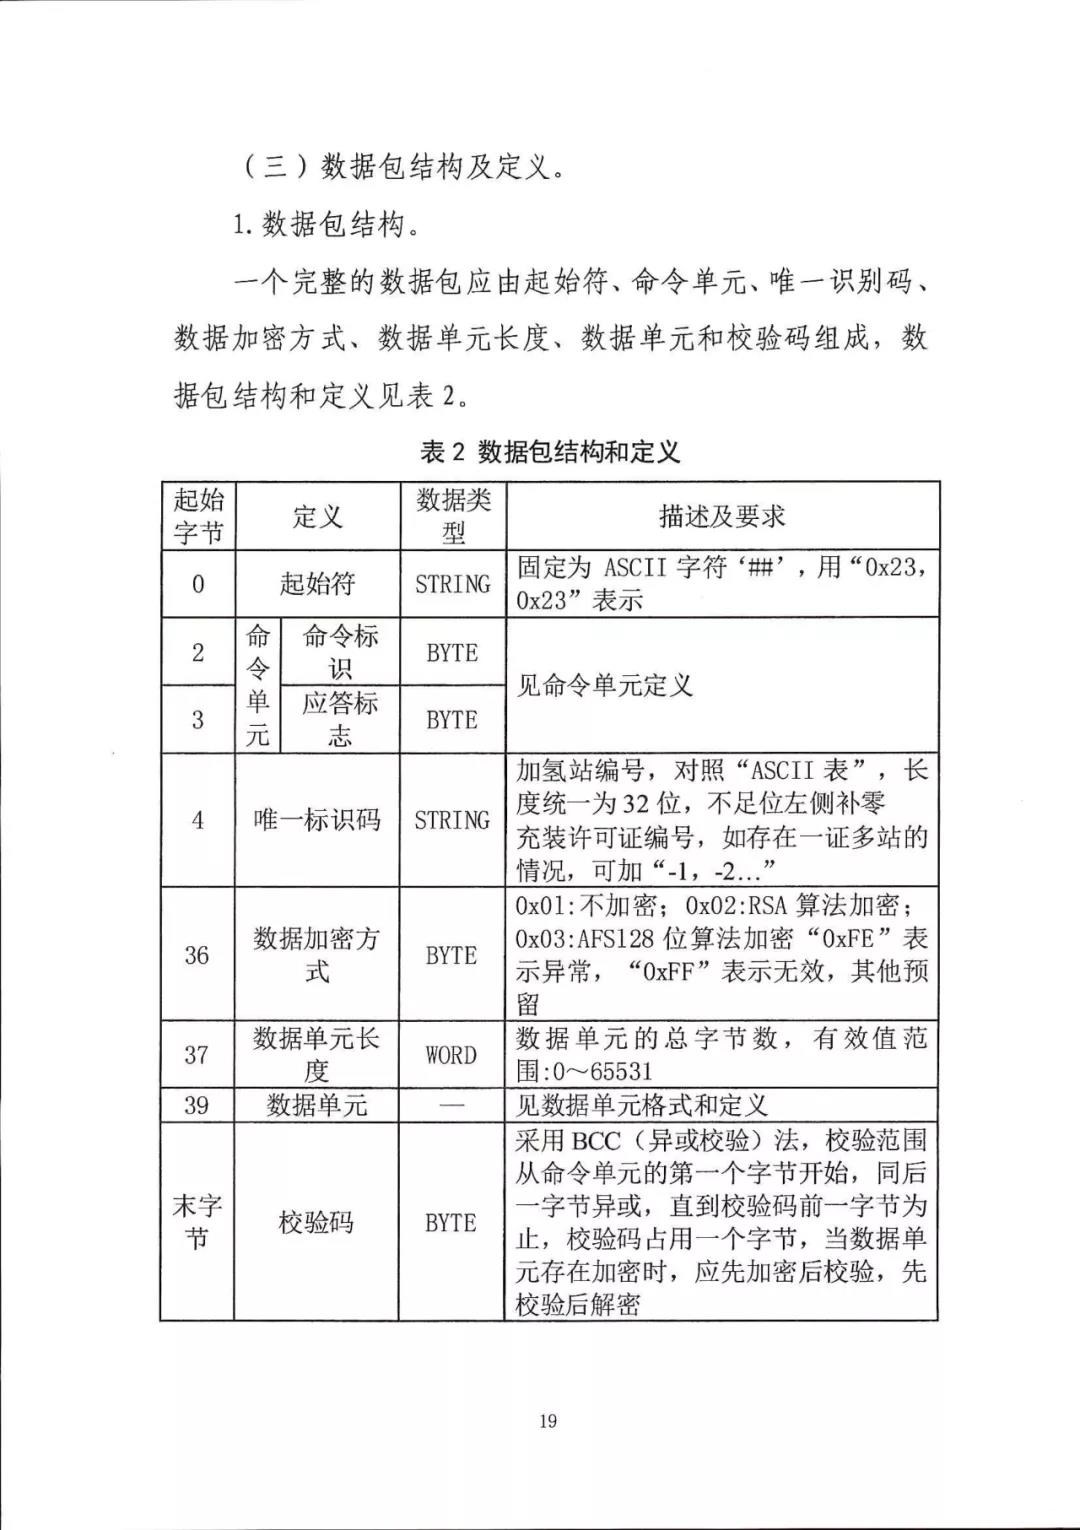 五部委：北京上海广东启动燃料电池汽车示范应用工作